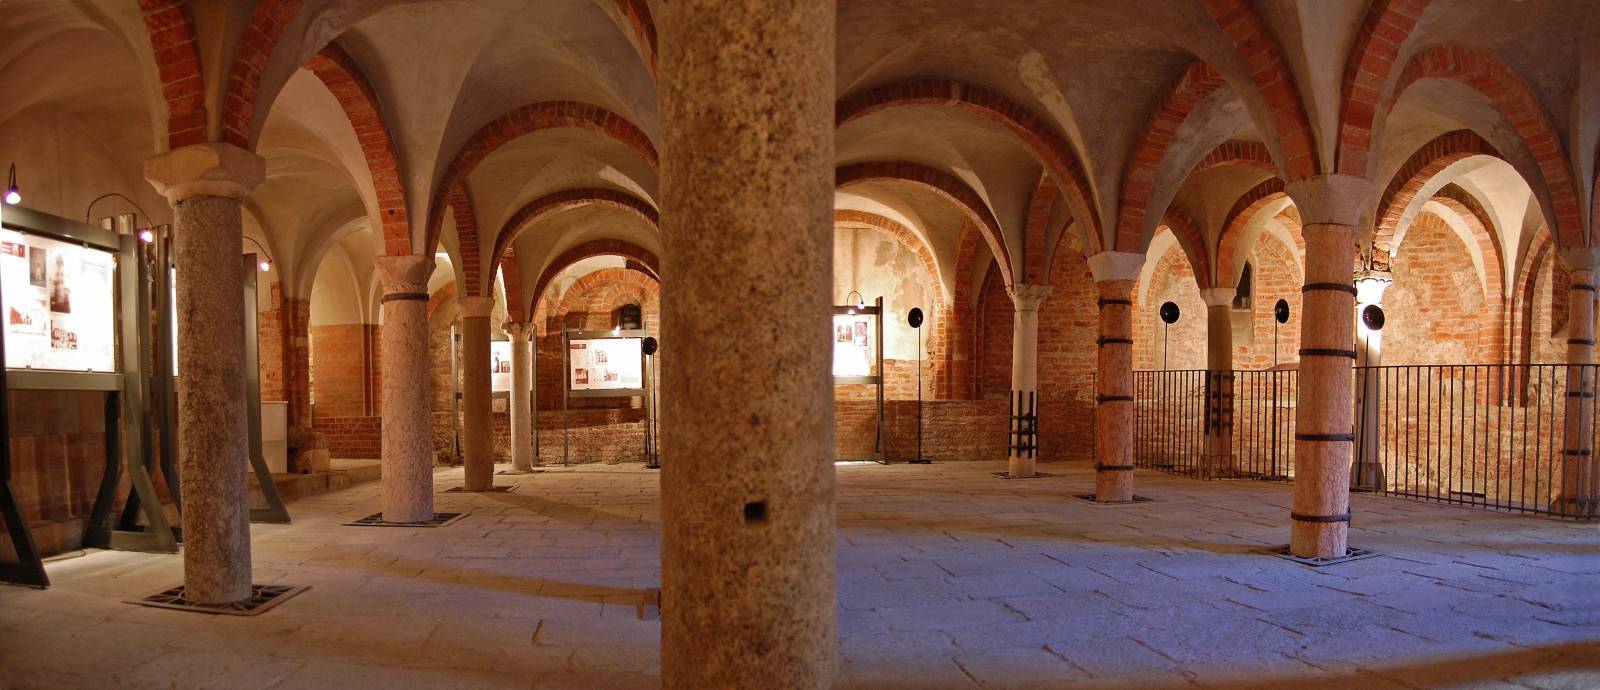 Milano sotterranea: tra la cripta di San Giovanni in Conca e catacombe